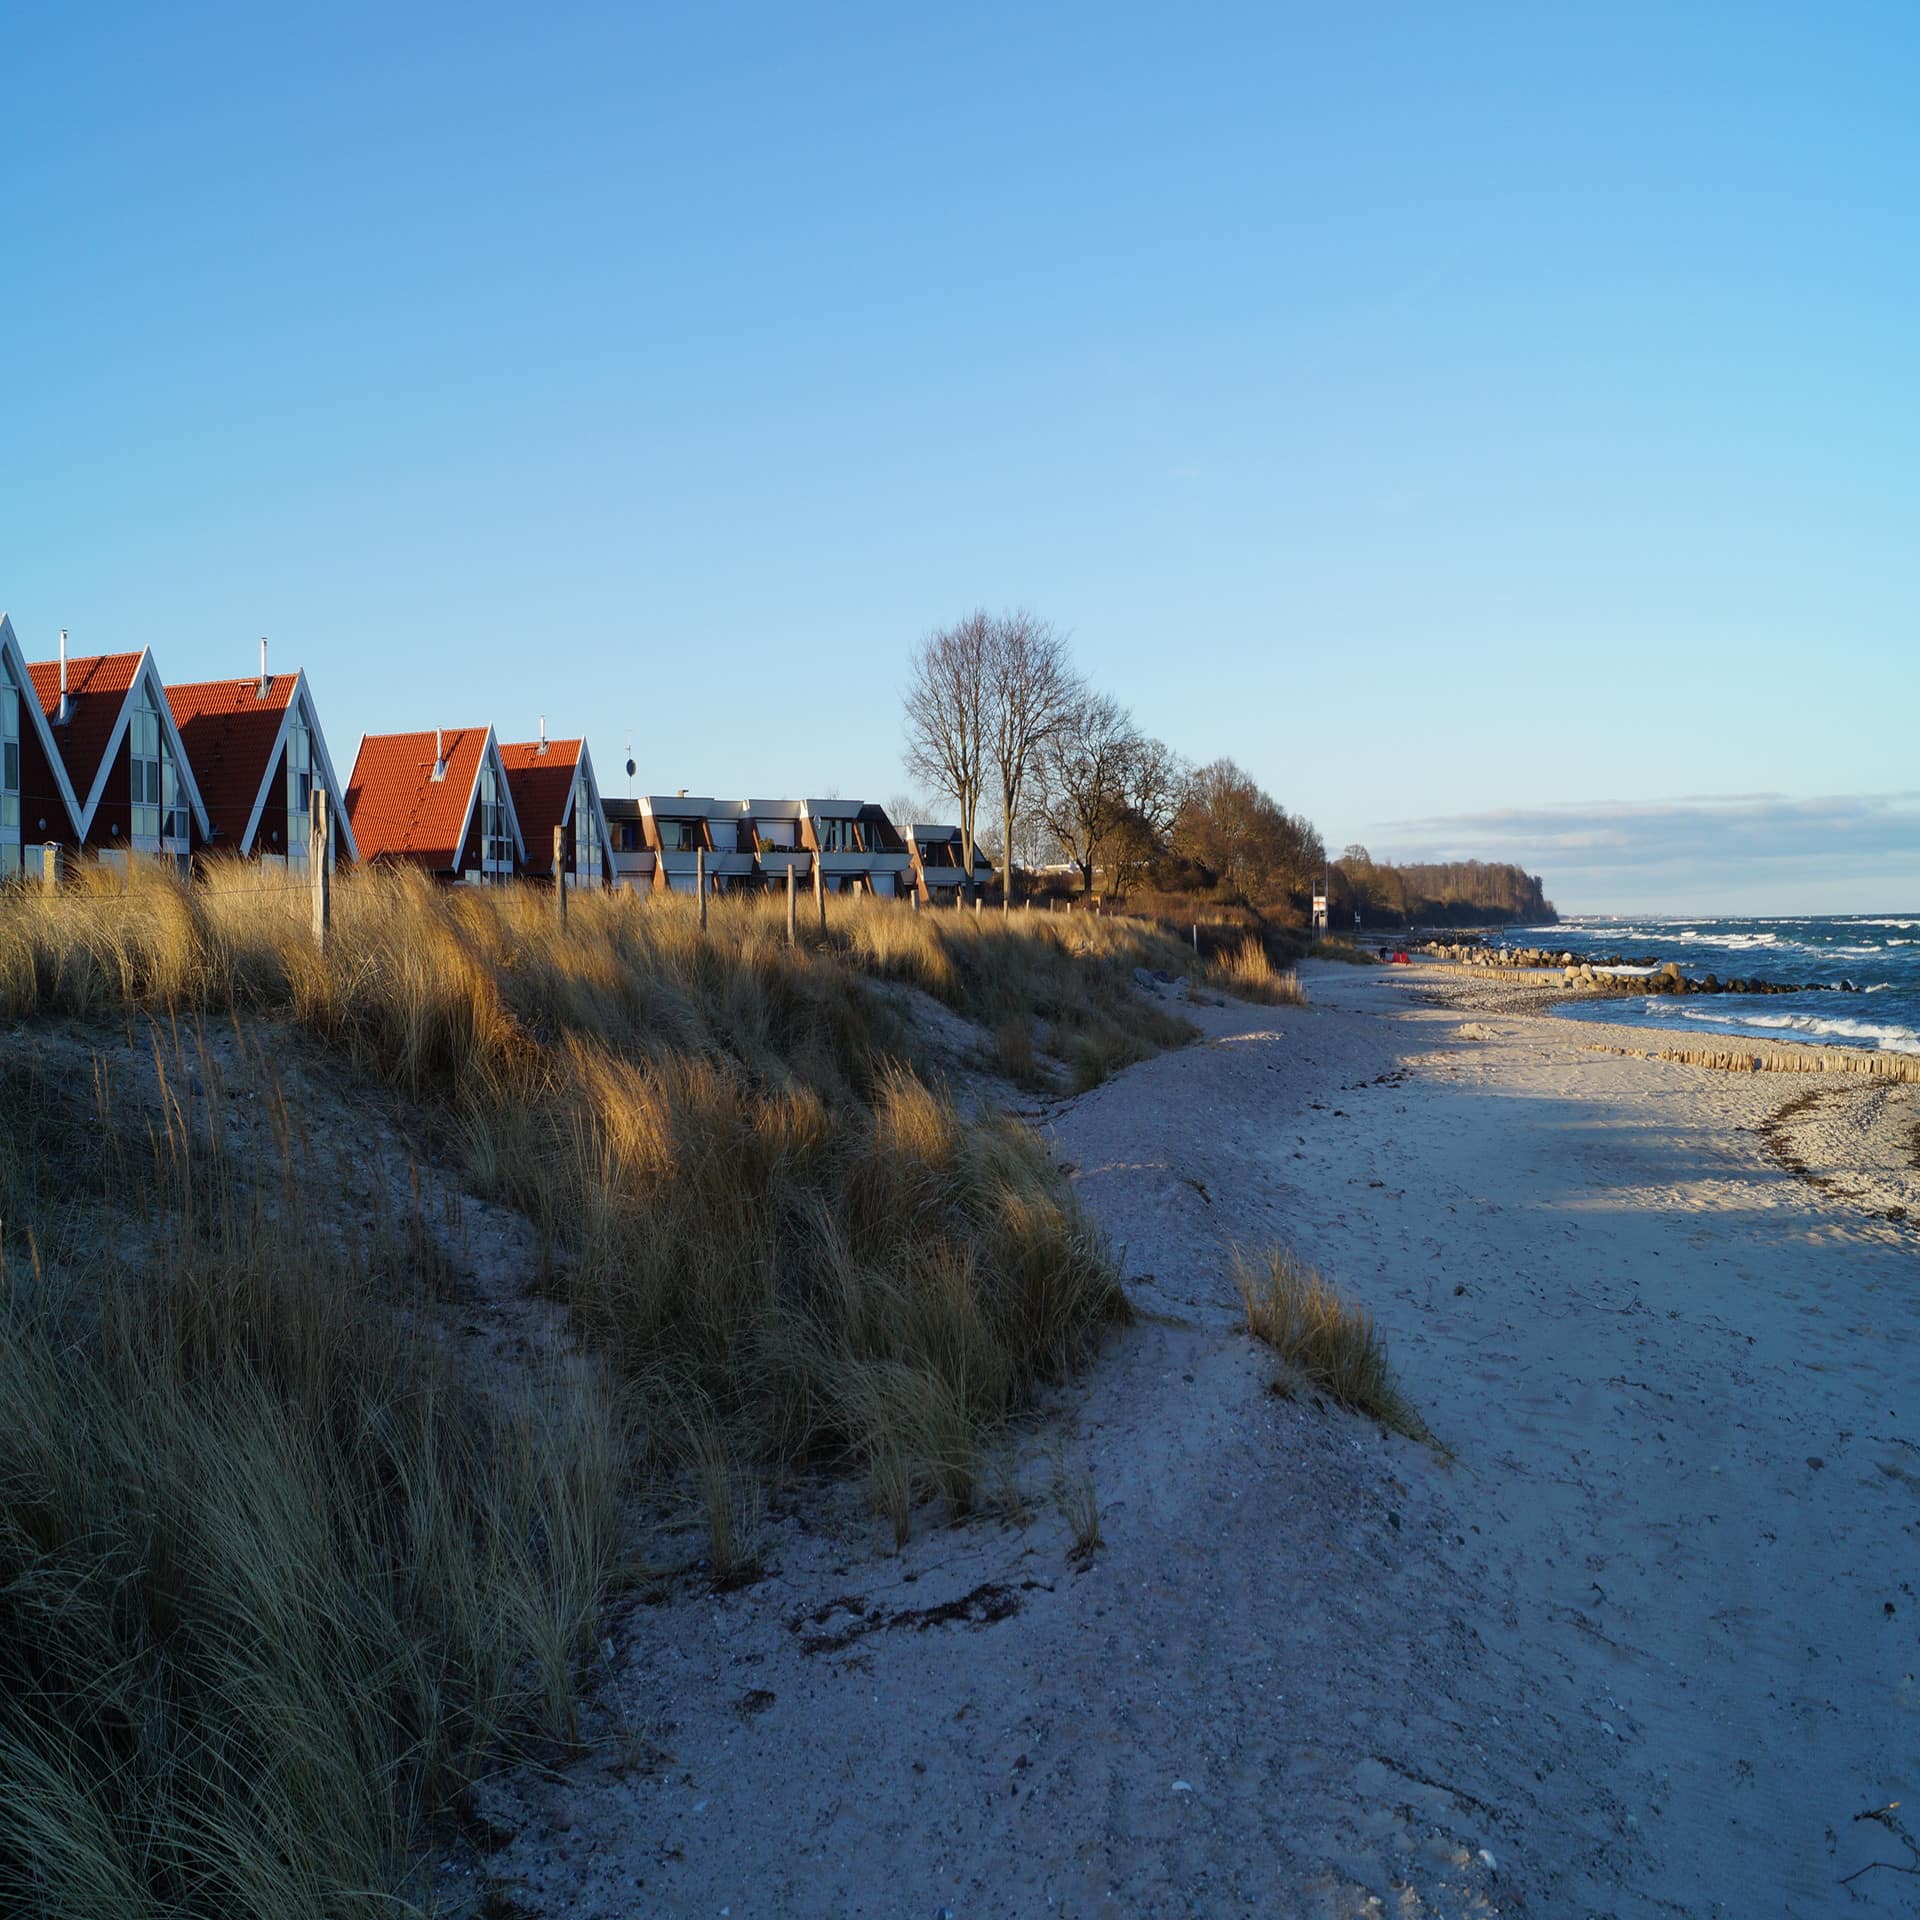 Einige kleine Häuser direkt am Strand, rechts am Meer.